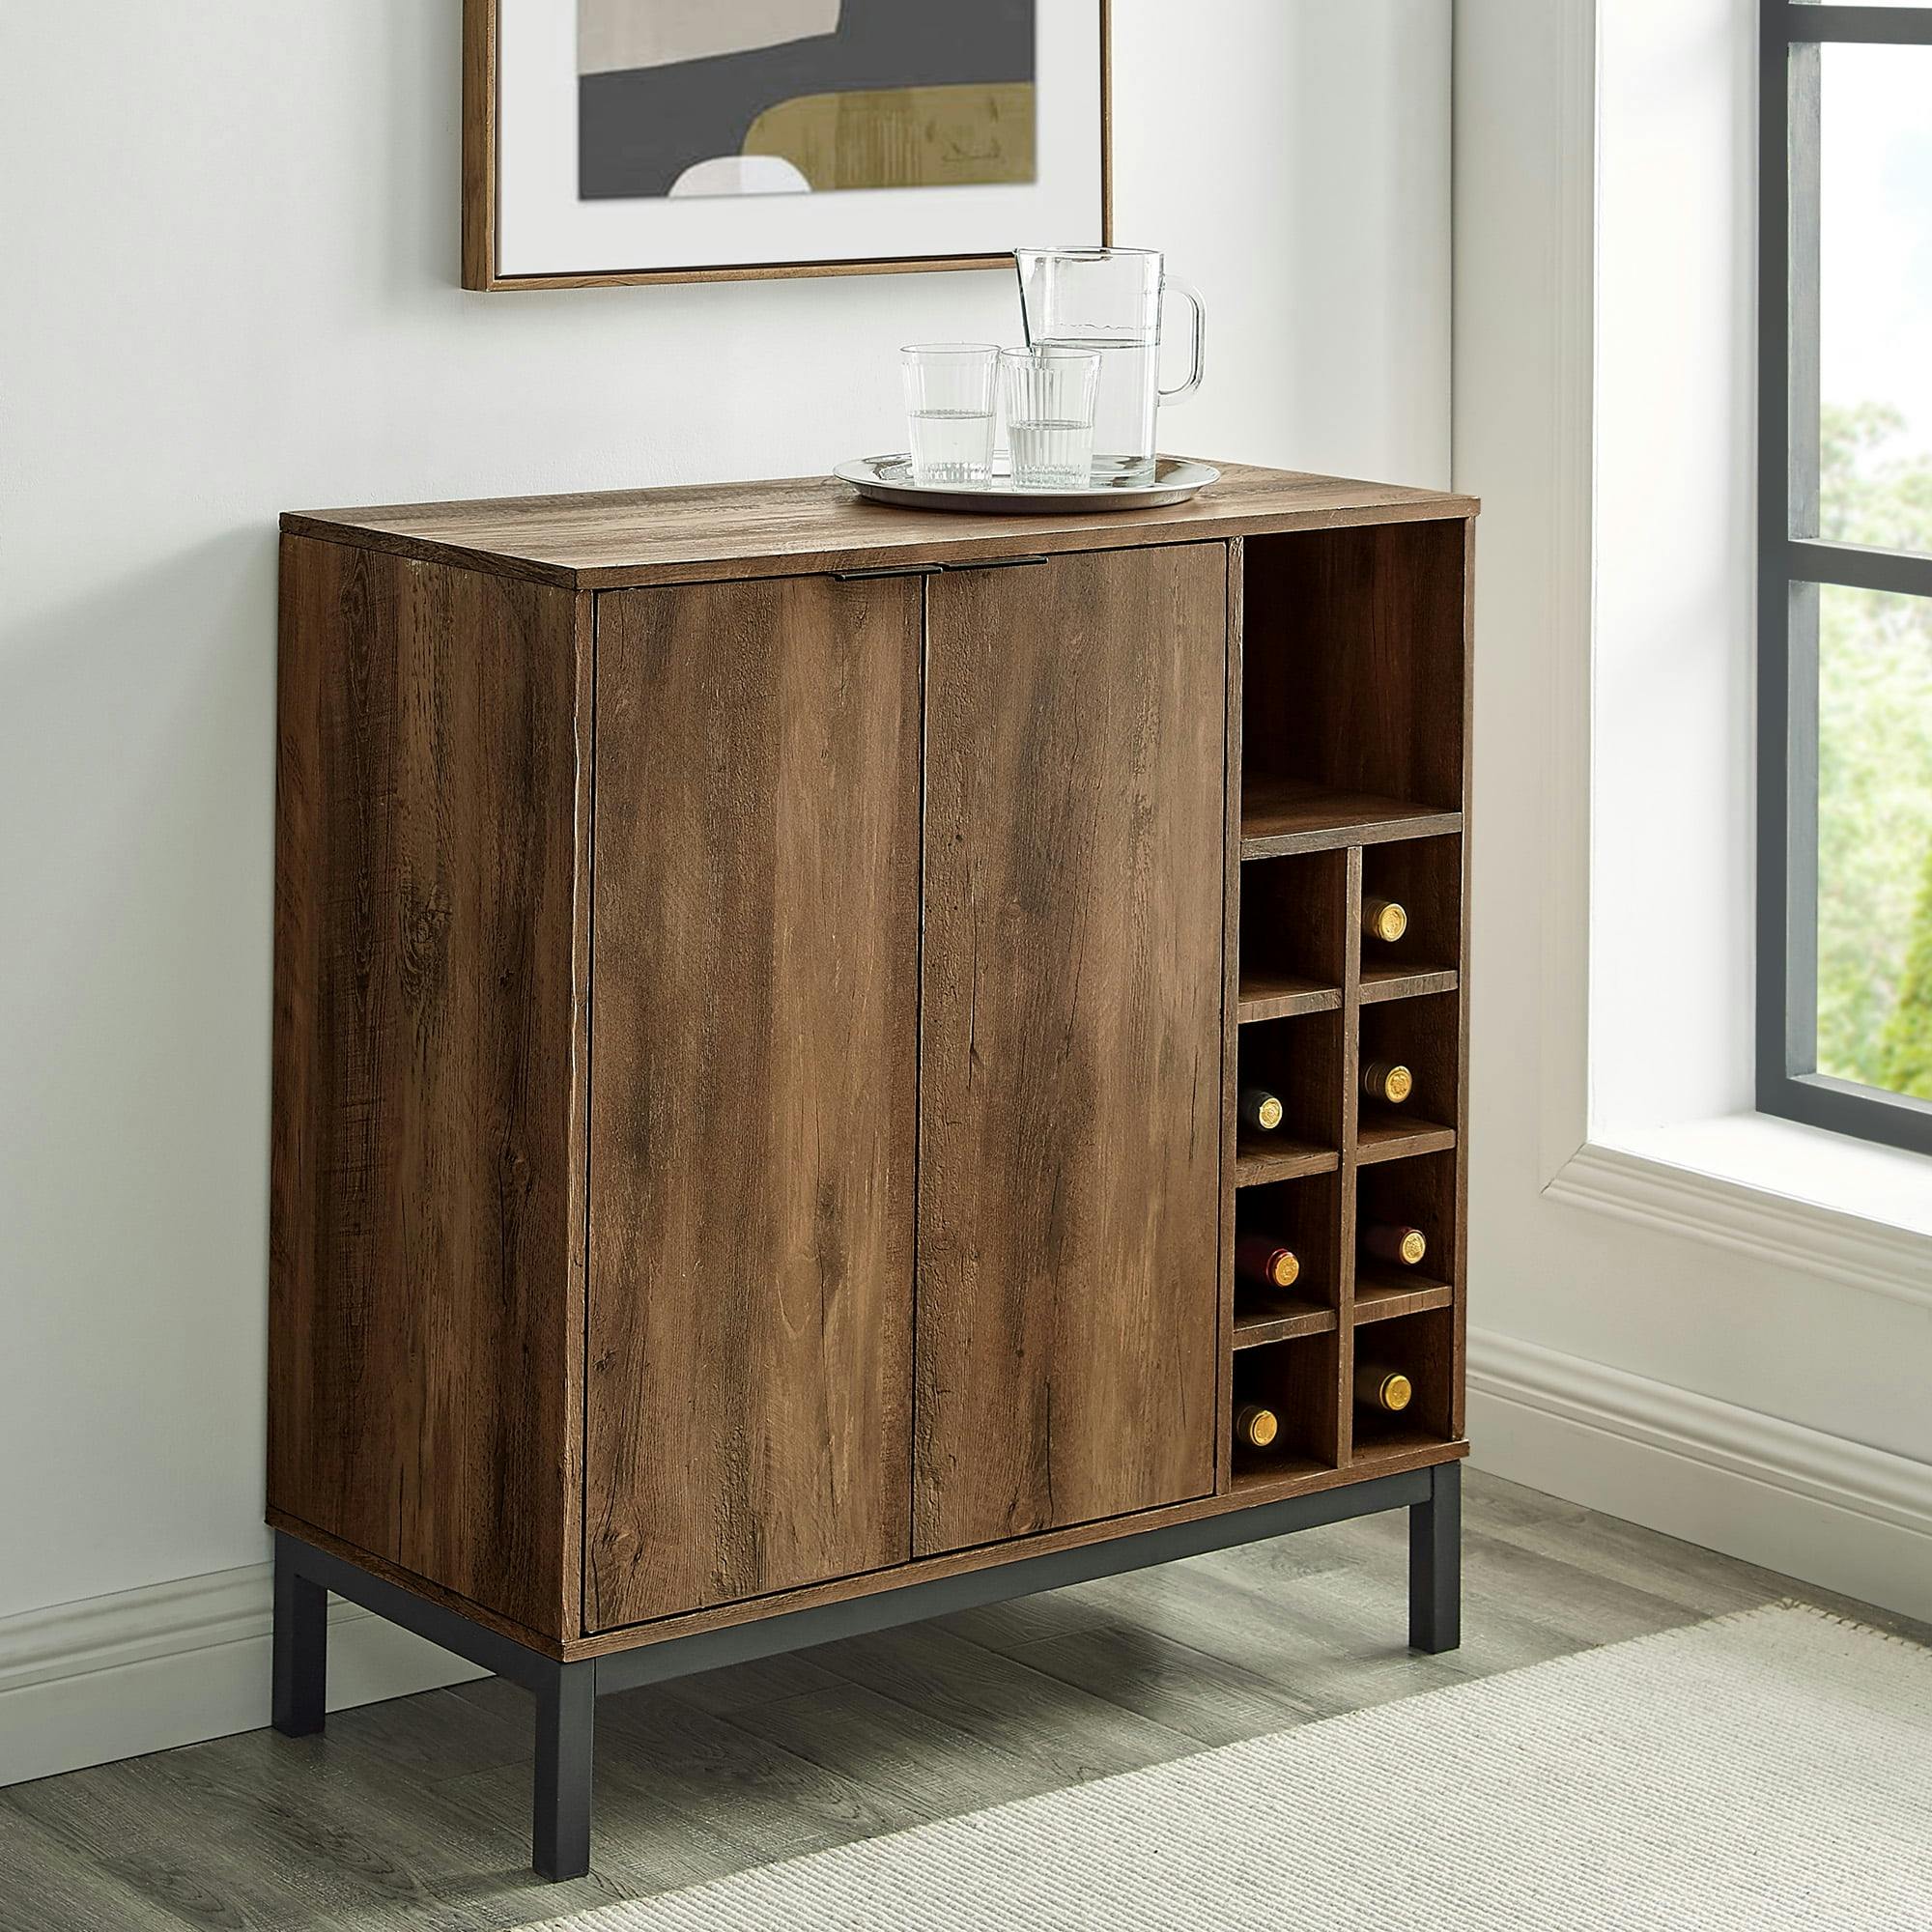 Urban Alloy Steel & Wood 2-Door Wine Storage Bar Cabinet